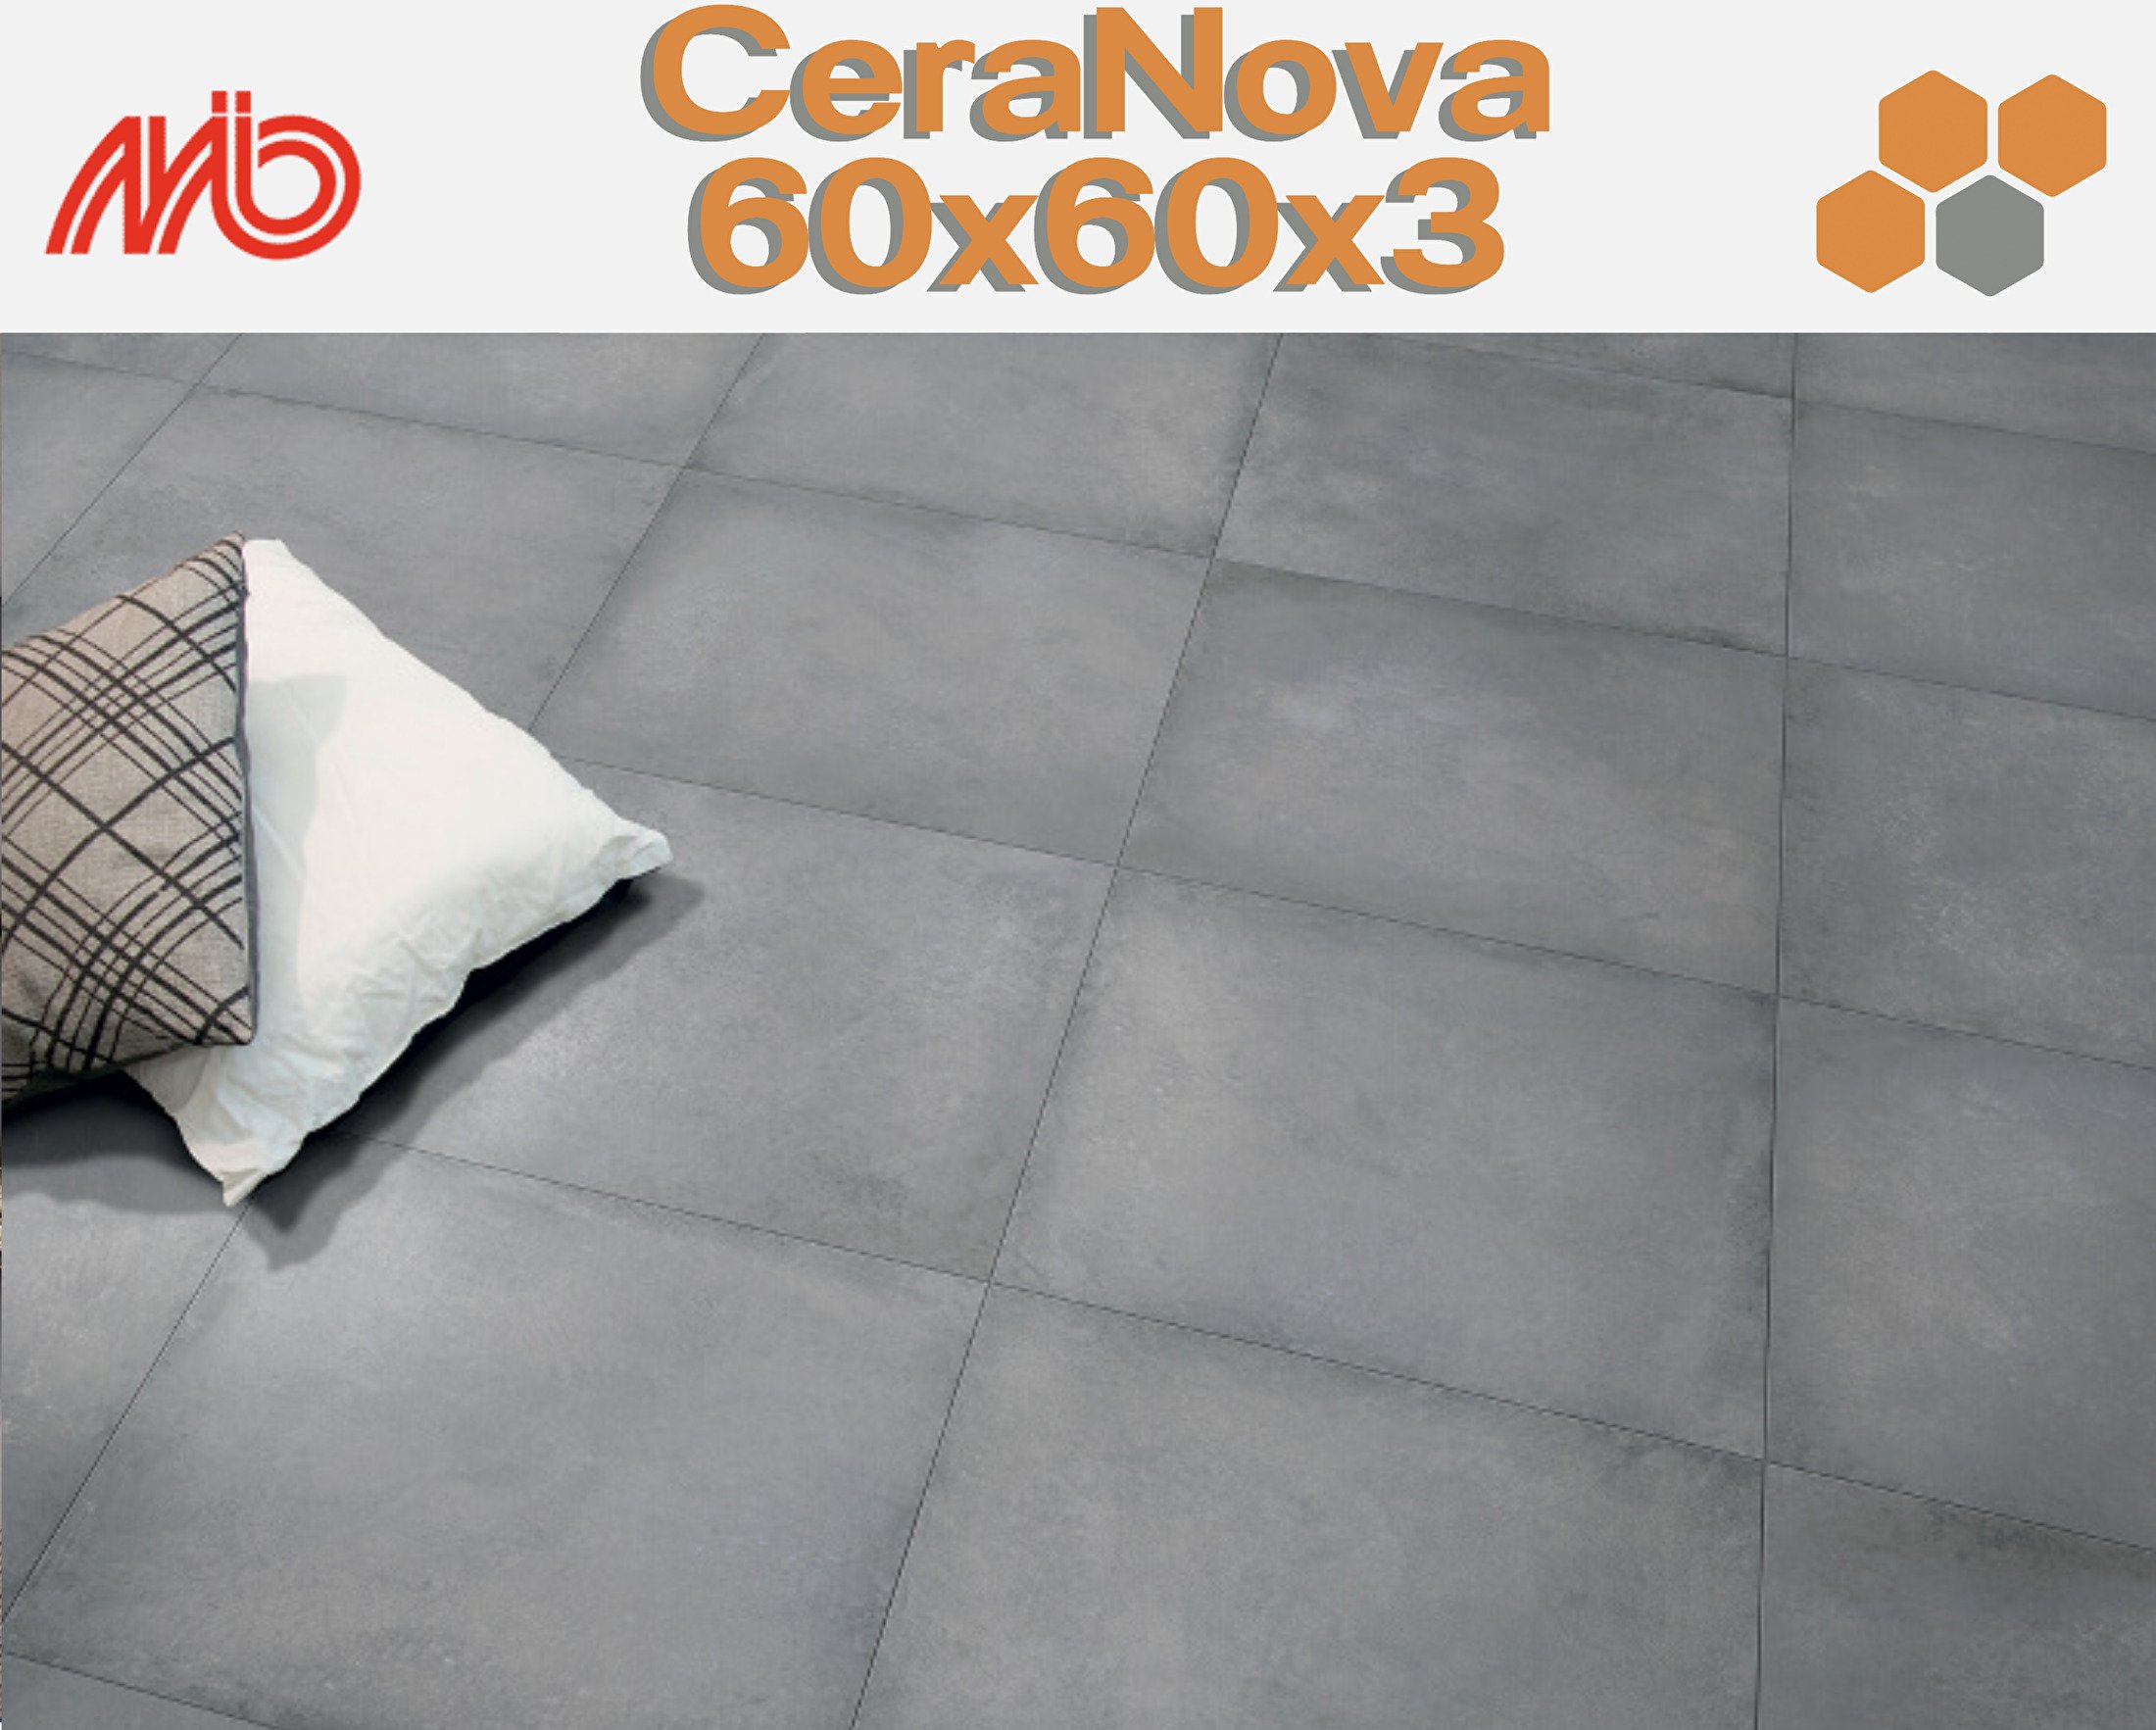 CeraNova 60x60x3